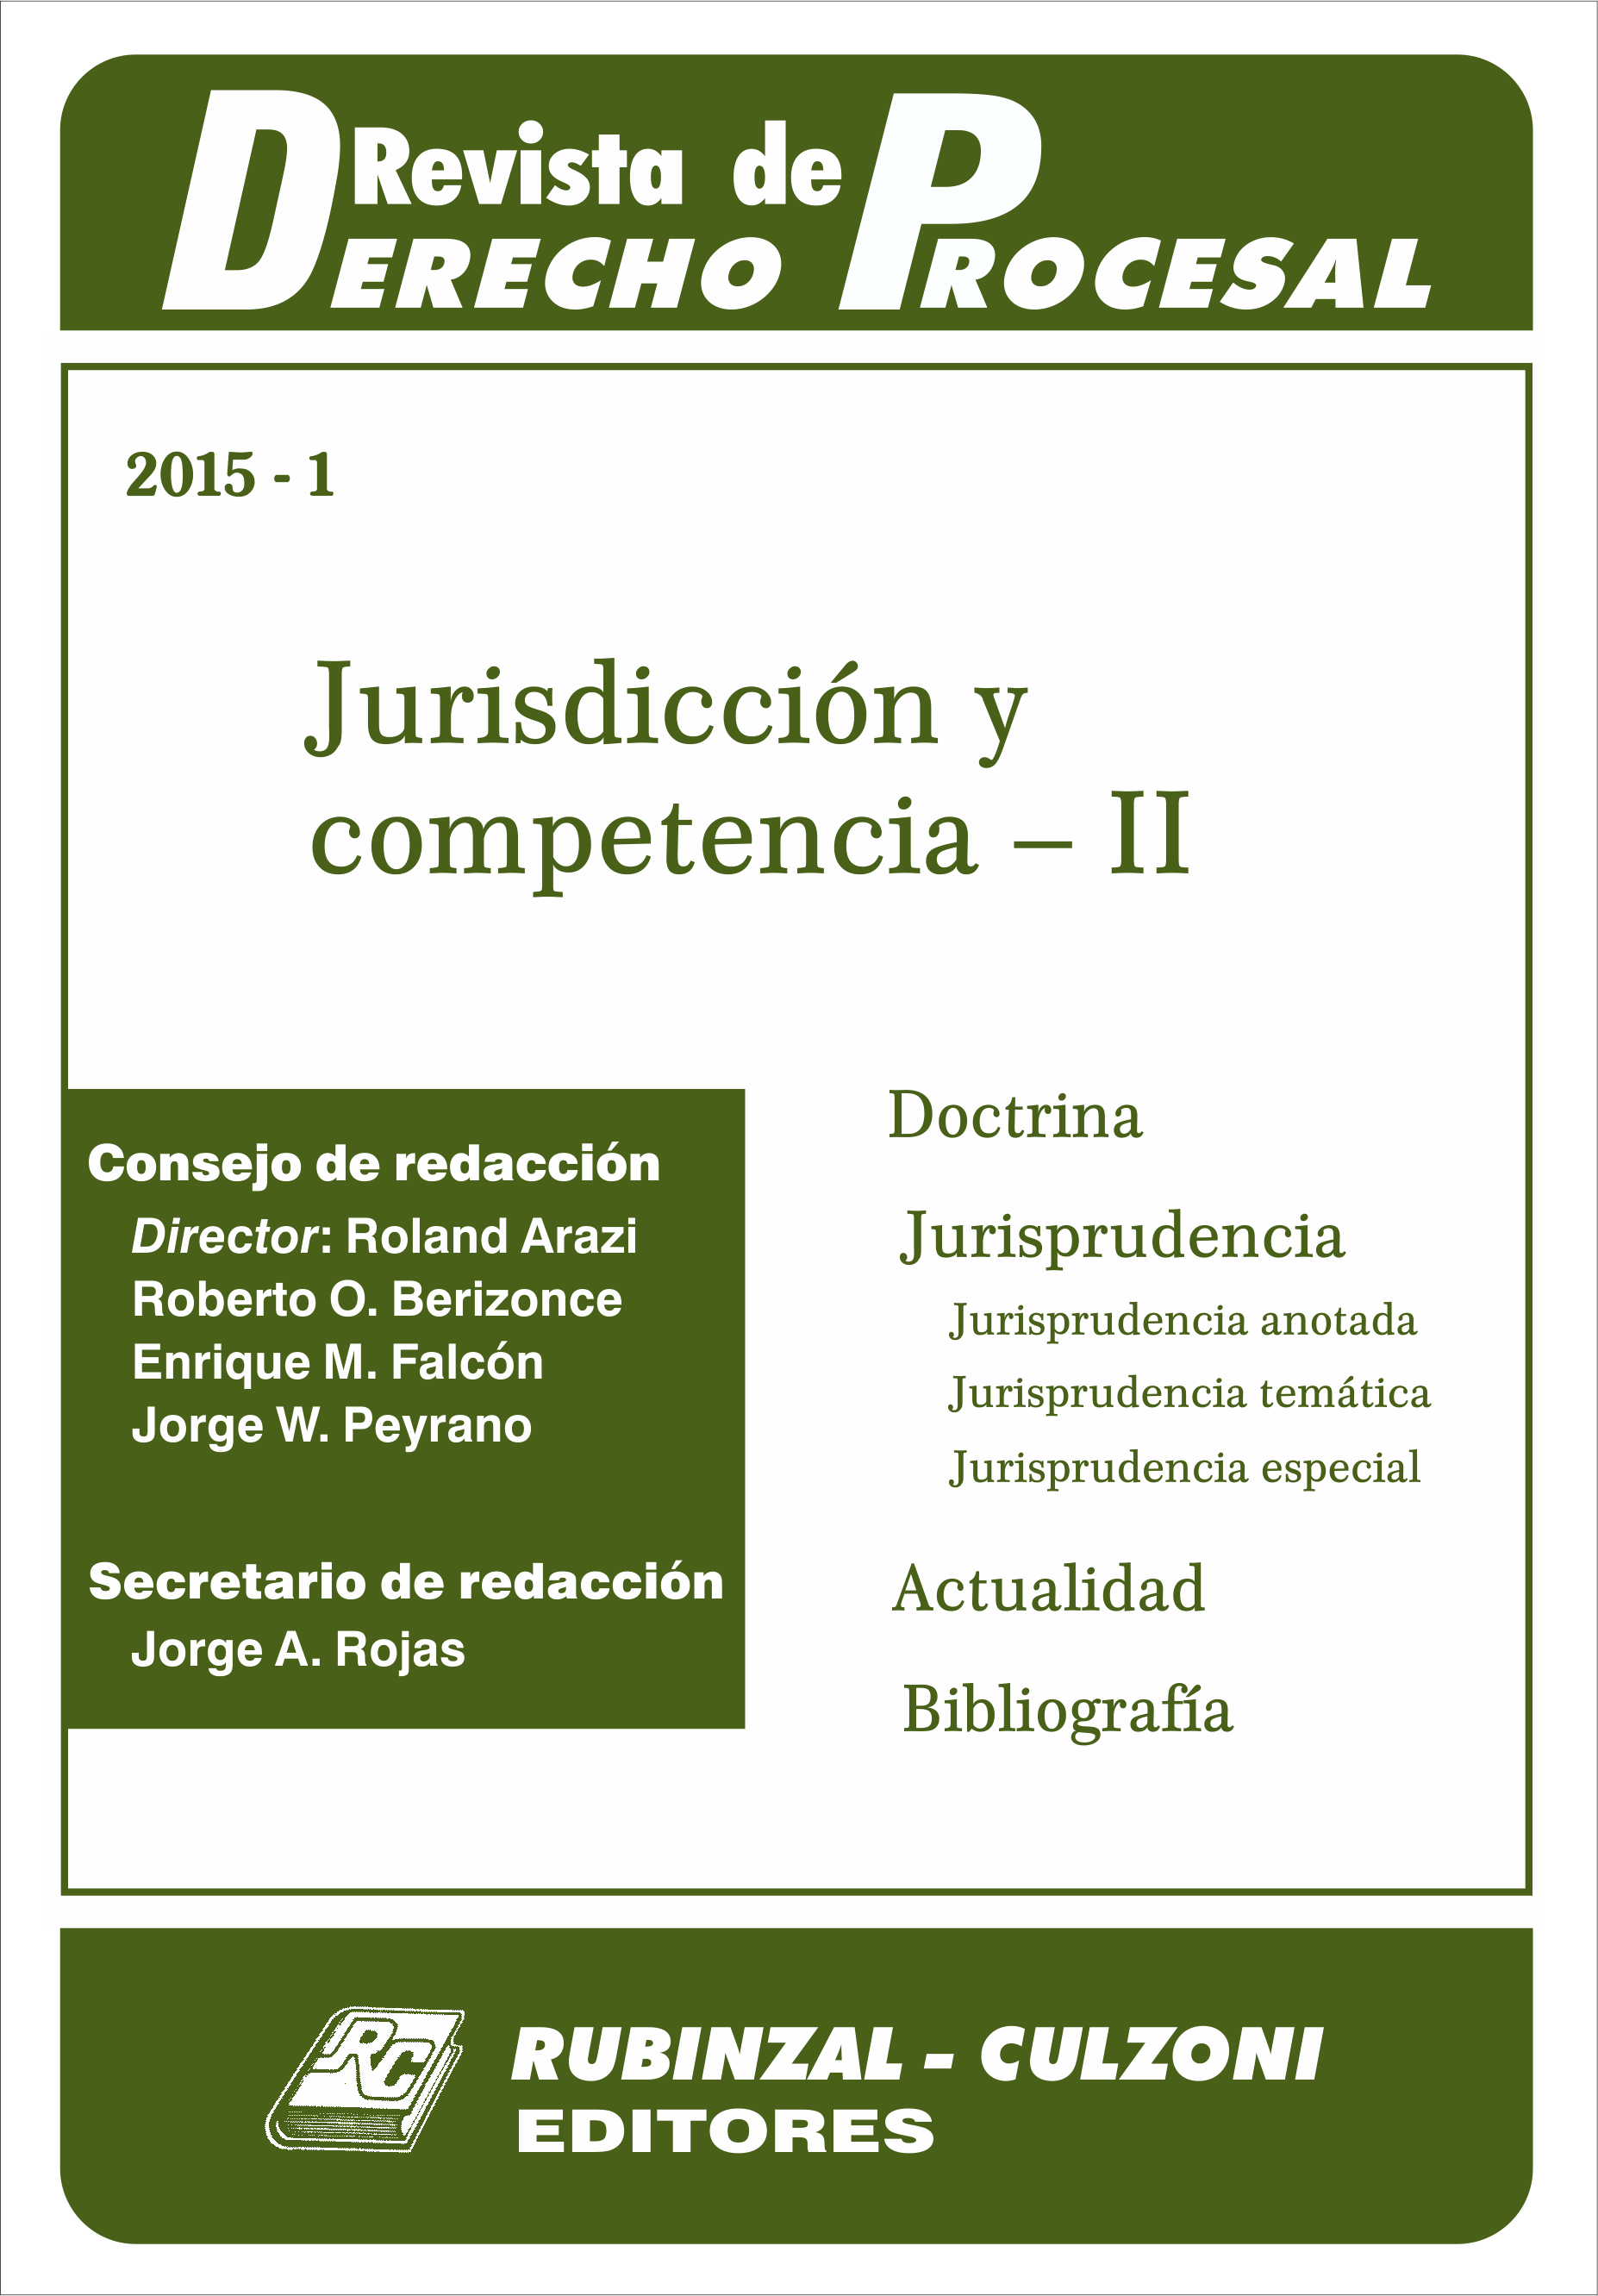  - Jurisdicción y competencia - II [2015-1]